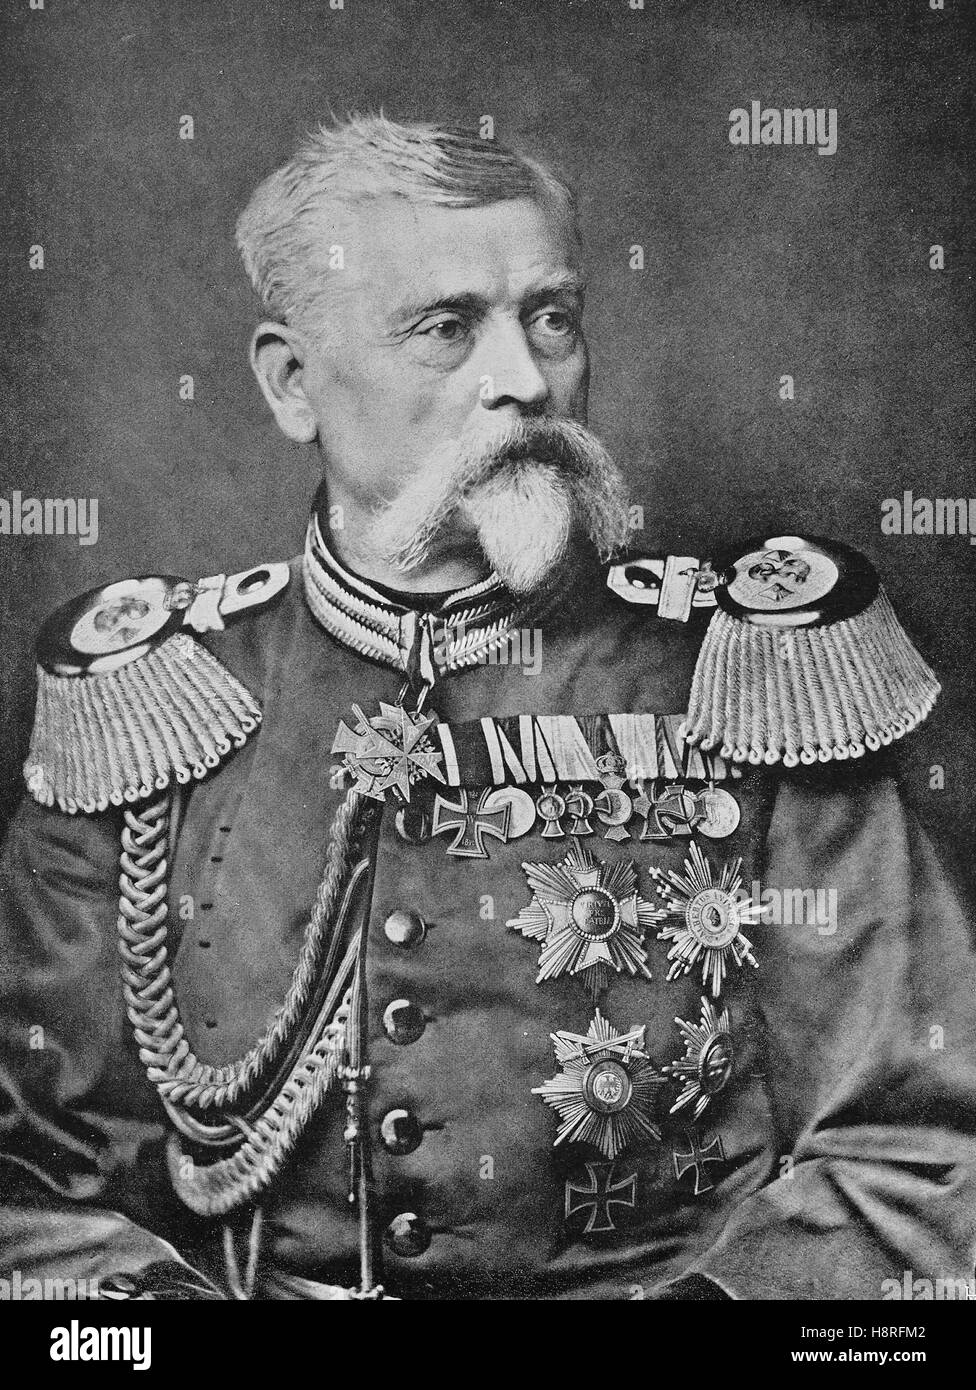 Ludwig Sansone Heinrich Arthur Freiherr von und zu der Tann-Rathsamhausen era un generale bavarese Foto Stock